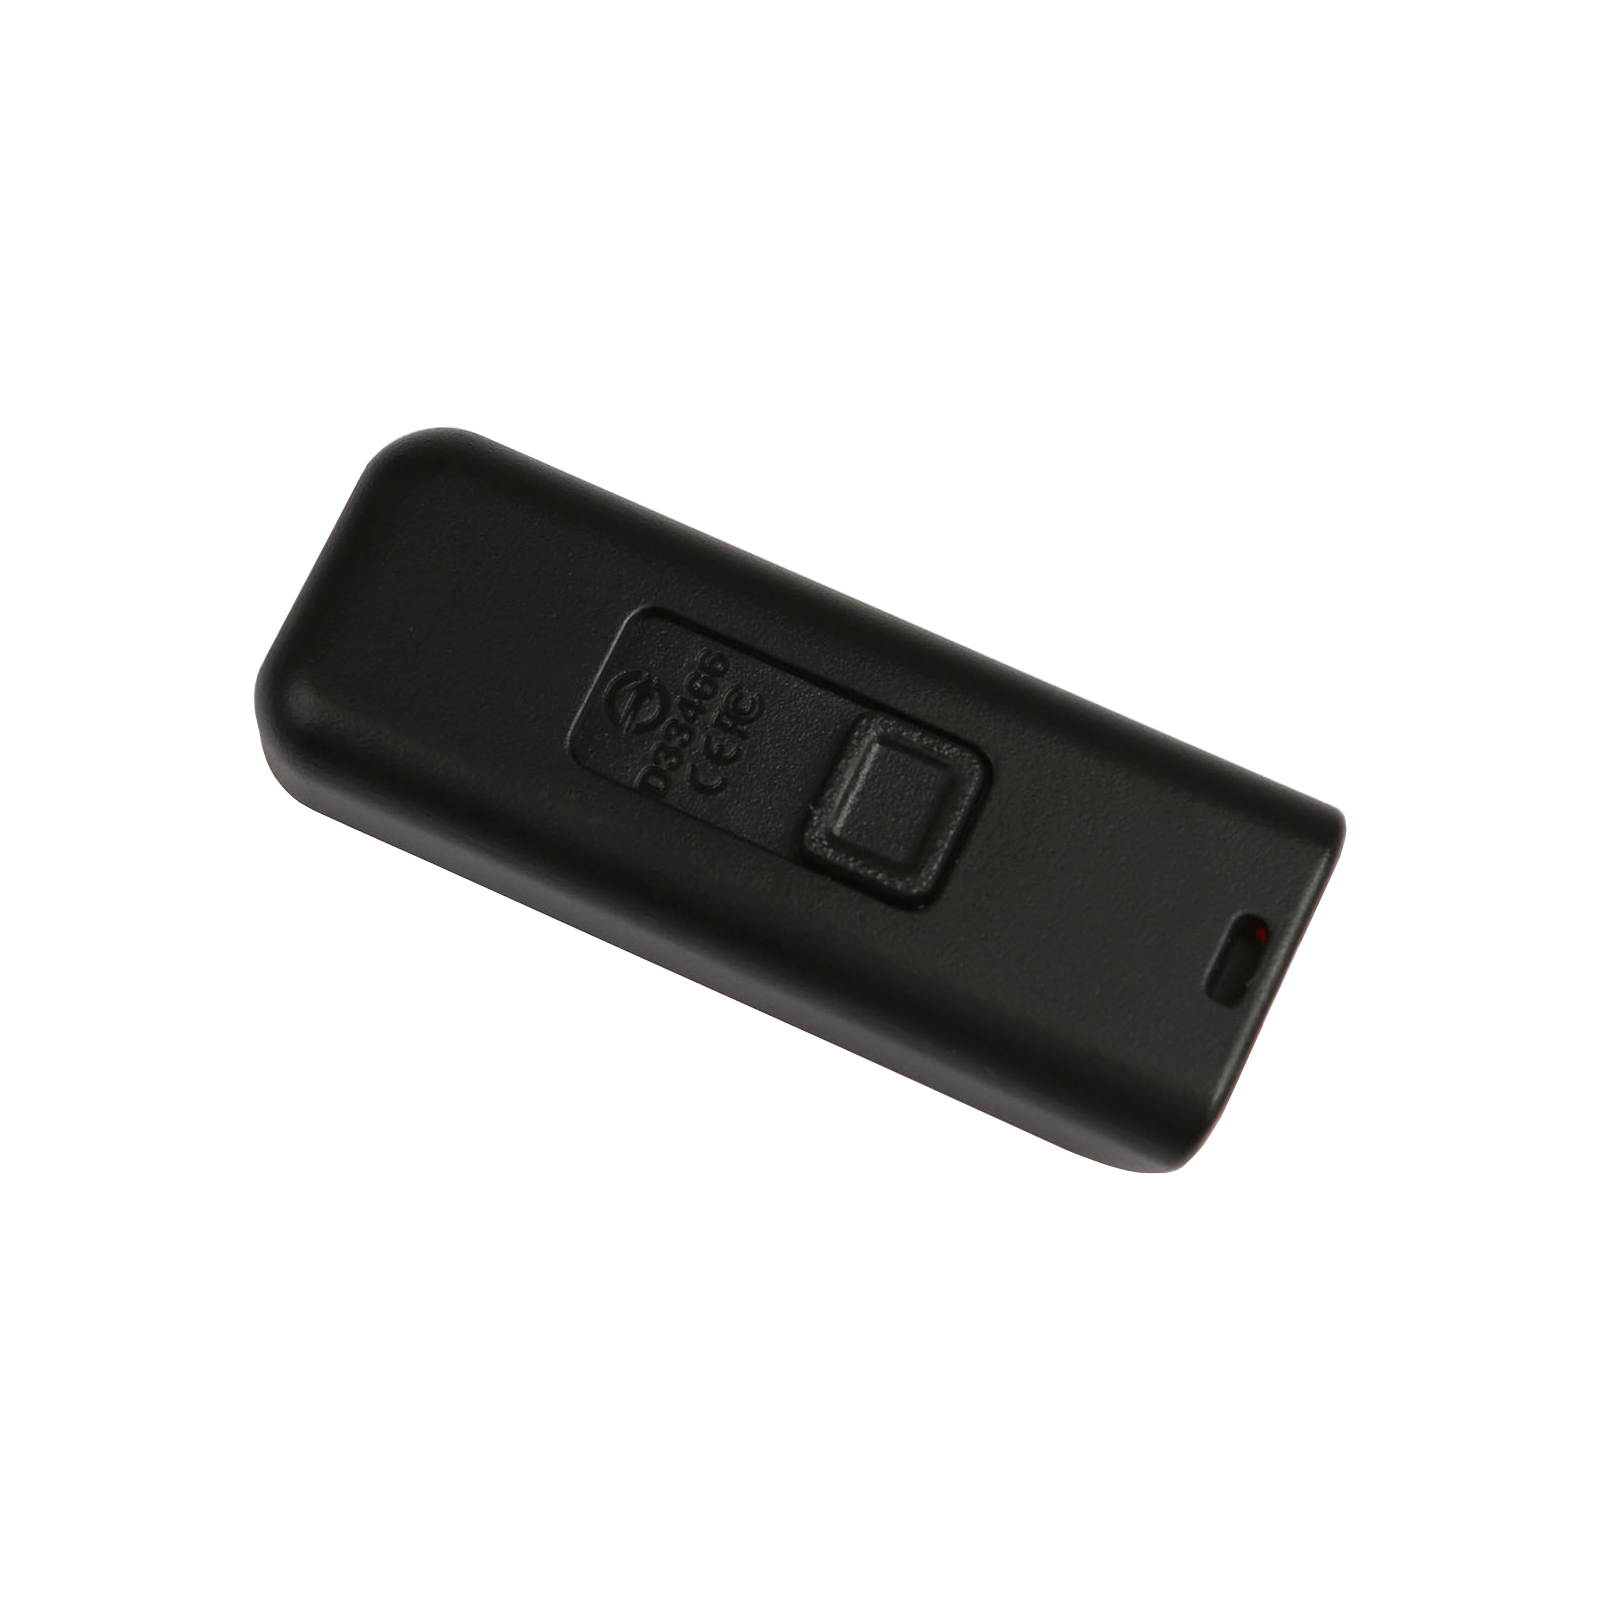 USB флеш накопичувач Apacer 16GB AH334 pink USB 2.0 (AP16GAH334P-1) зображення 4